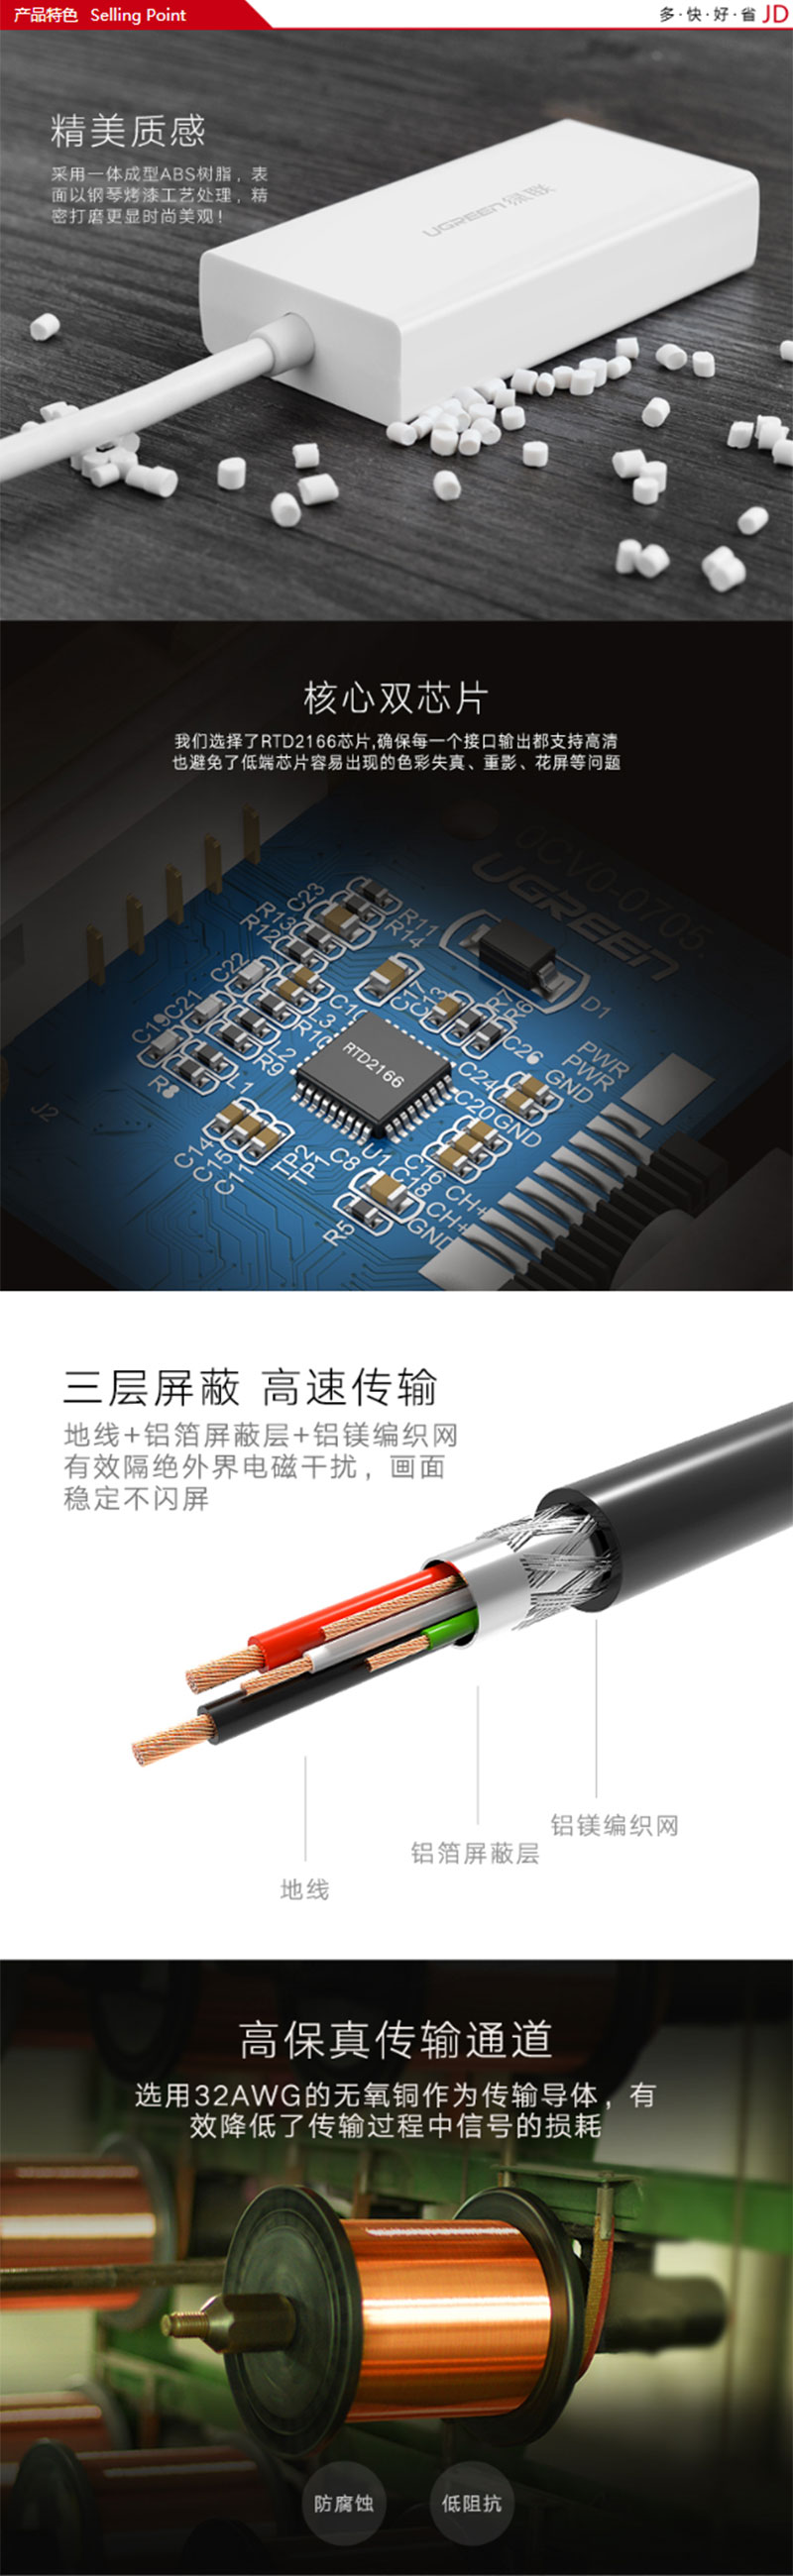 绿联20417 Mini DP转HDMI/VGA/DVI三接口